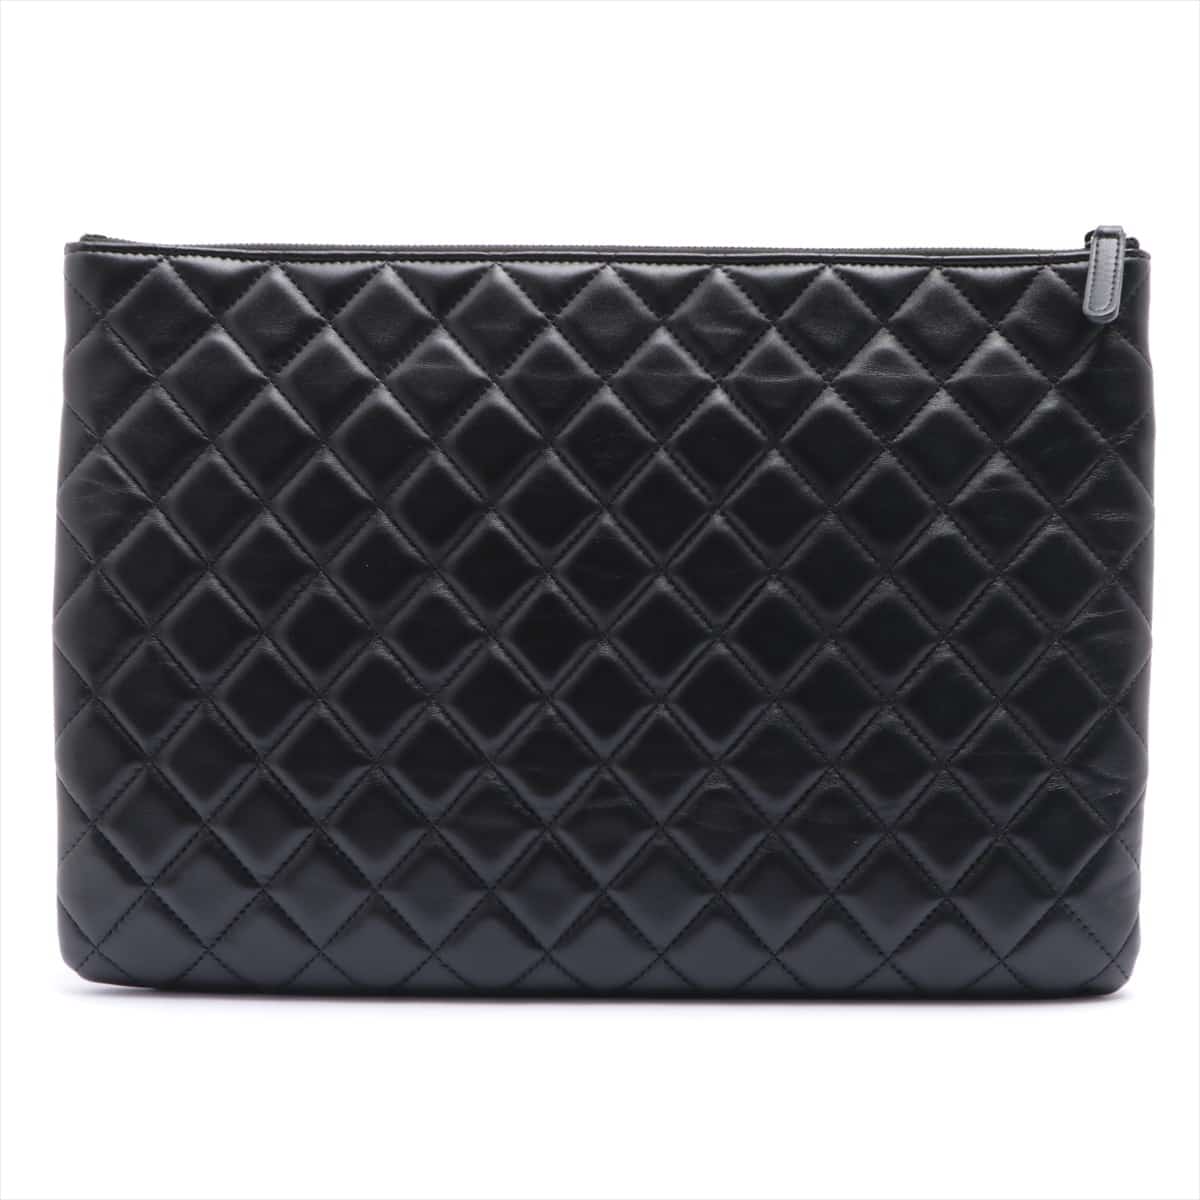 Chanel Matelasse Lambskin Clutch bag Black Black hardware 25XXXXXX